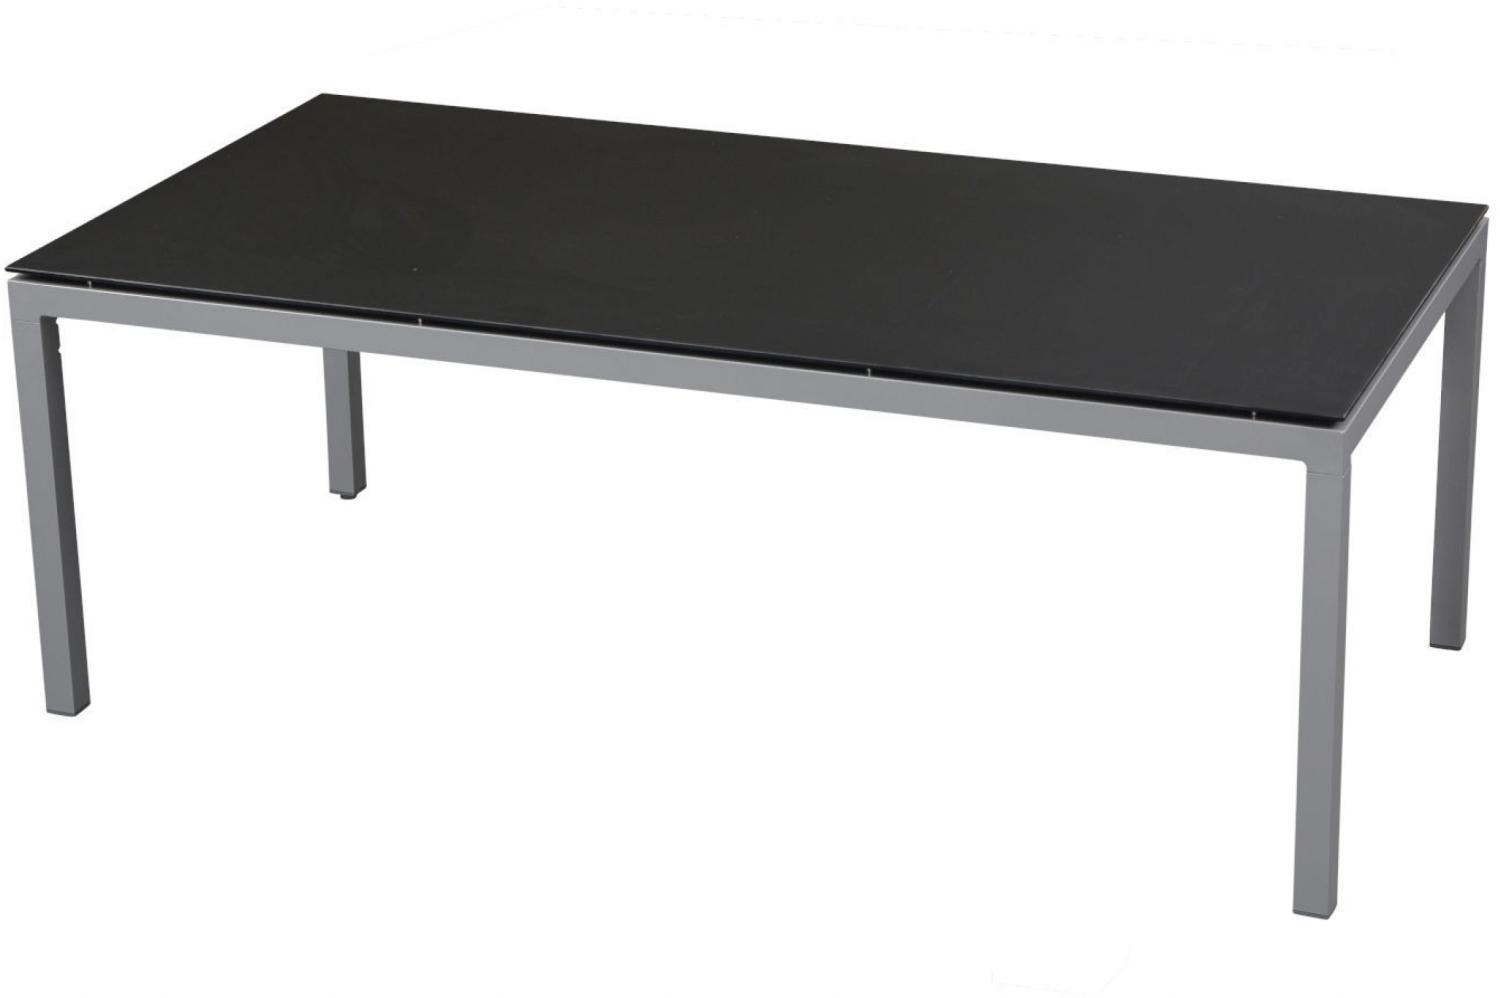 Inko Gartentisch Aluminium silber 160x90 cm Terrassentisch Tischplatte nach Wahl Teakholz recycelt Bild 1